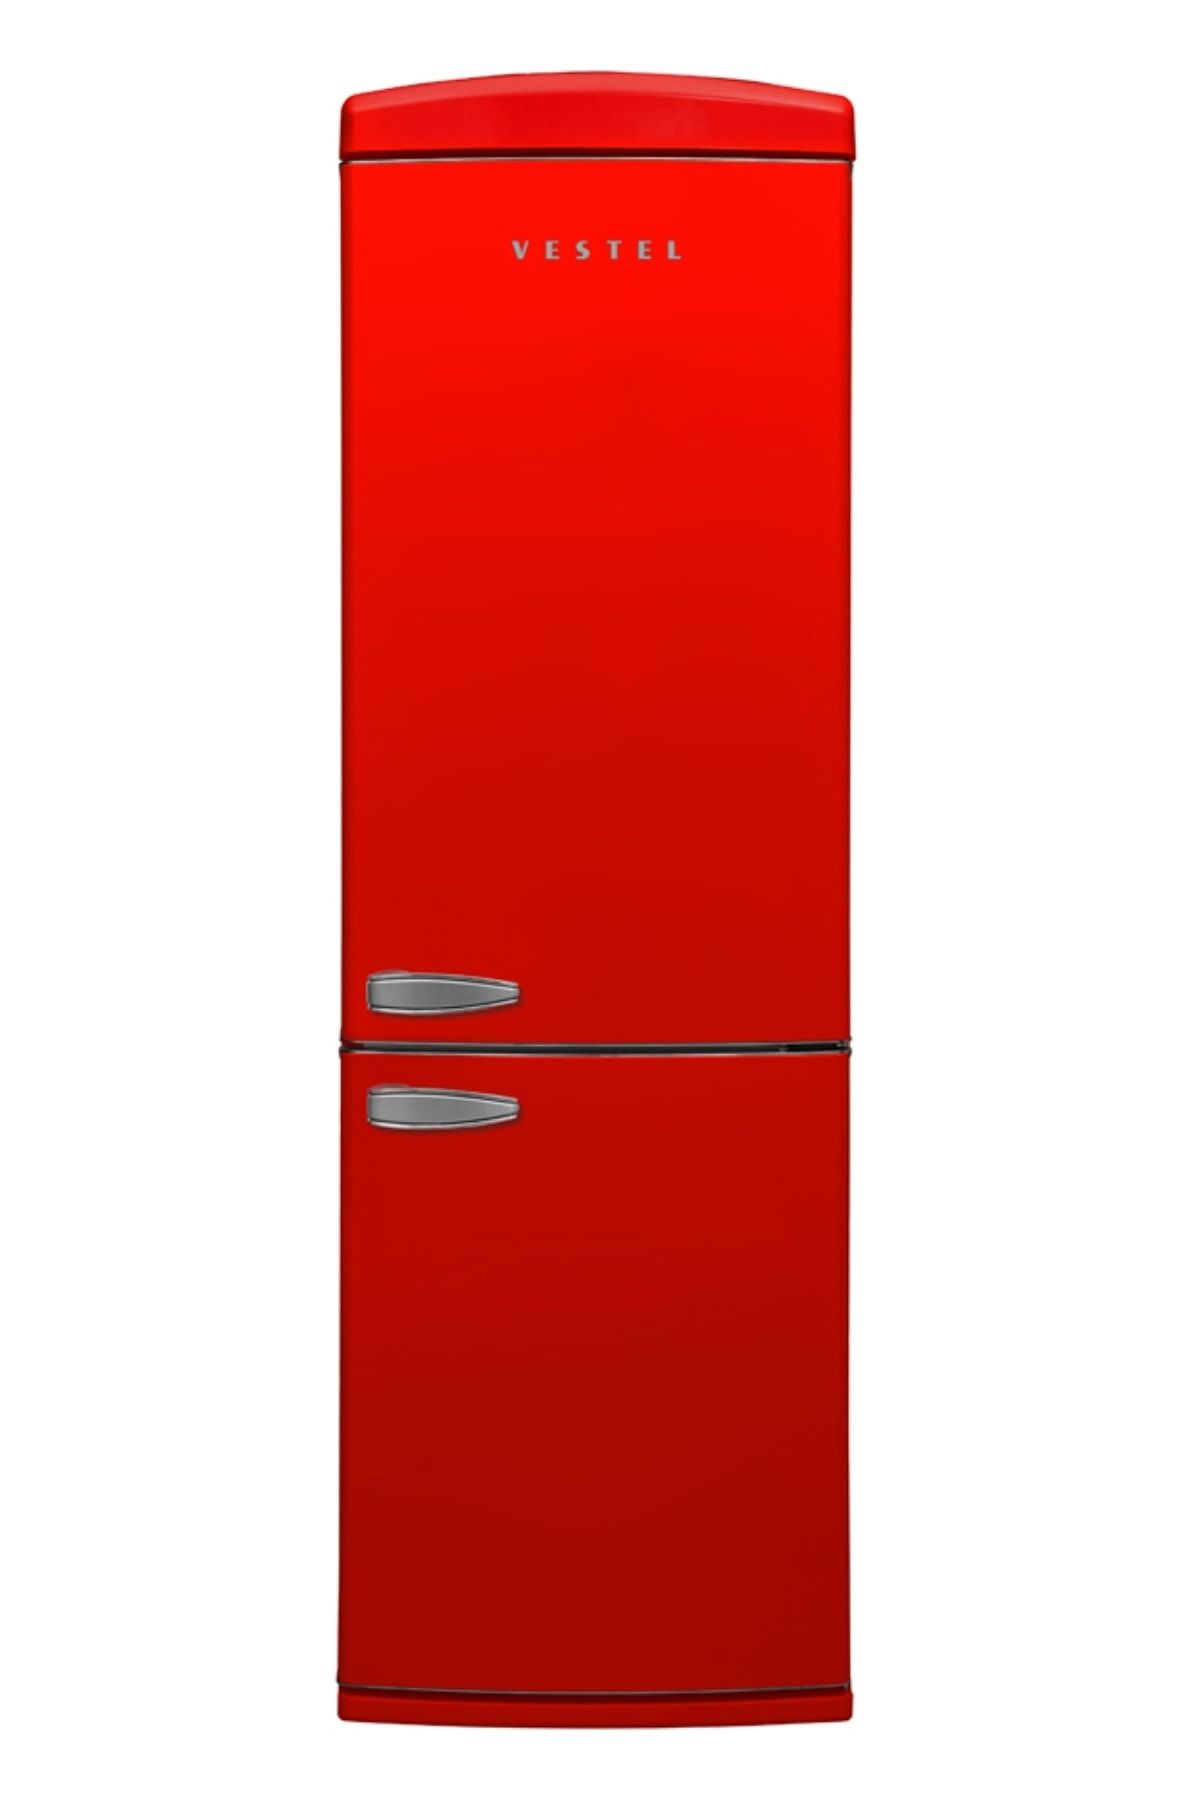 VESTEL RETRO NFK37001 KIRMIZI No-Frost Kombi Buzdolabı